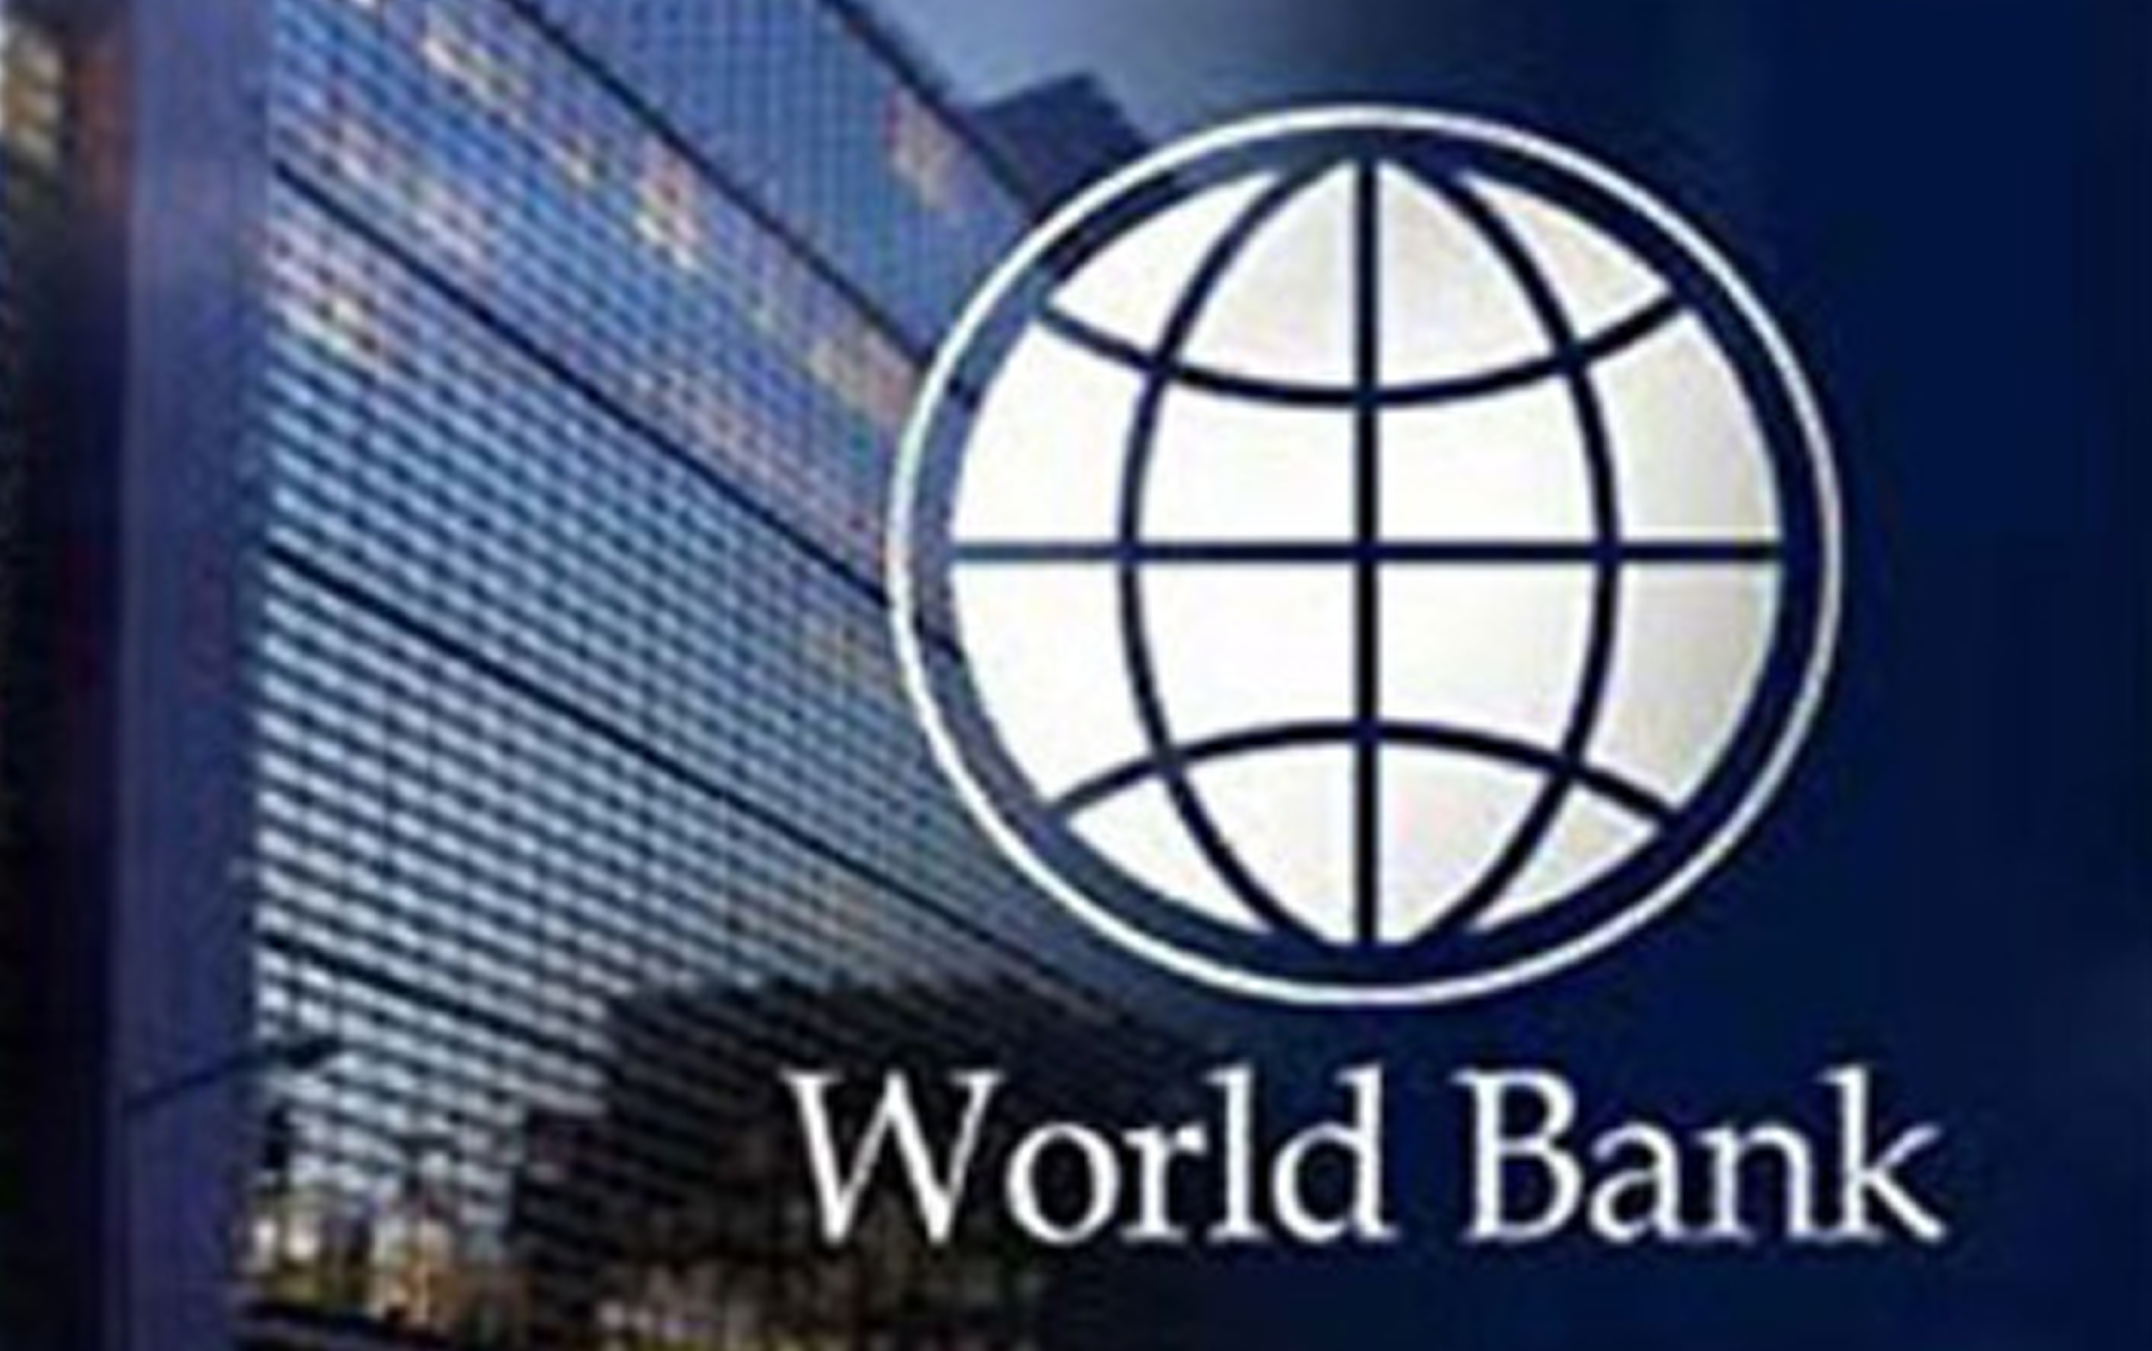 नेपाल र विश्व बैंकबीच १३ अर्ब रुपैयाँको ऋण सम्झौतामा हस्ताक्षर